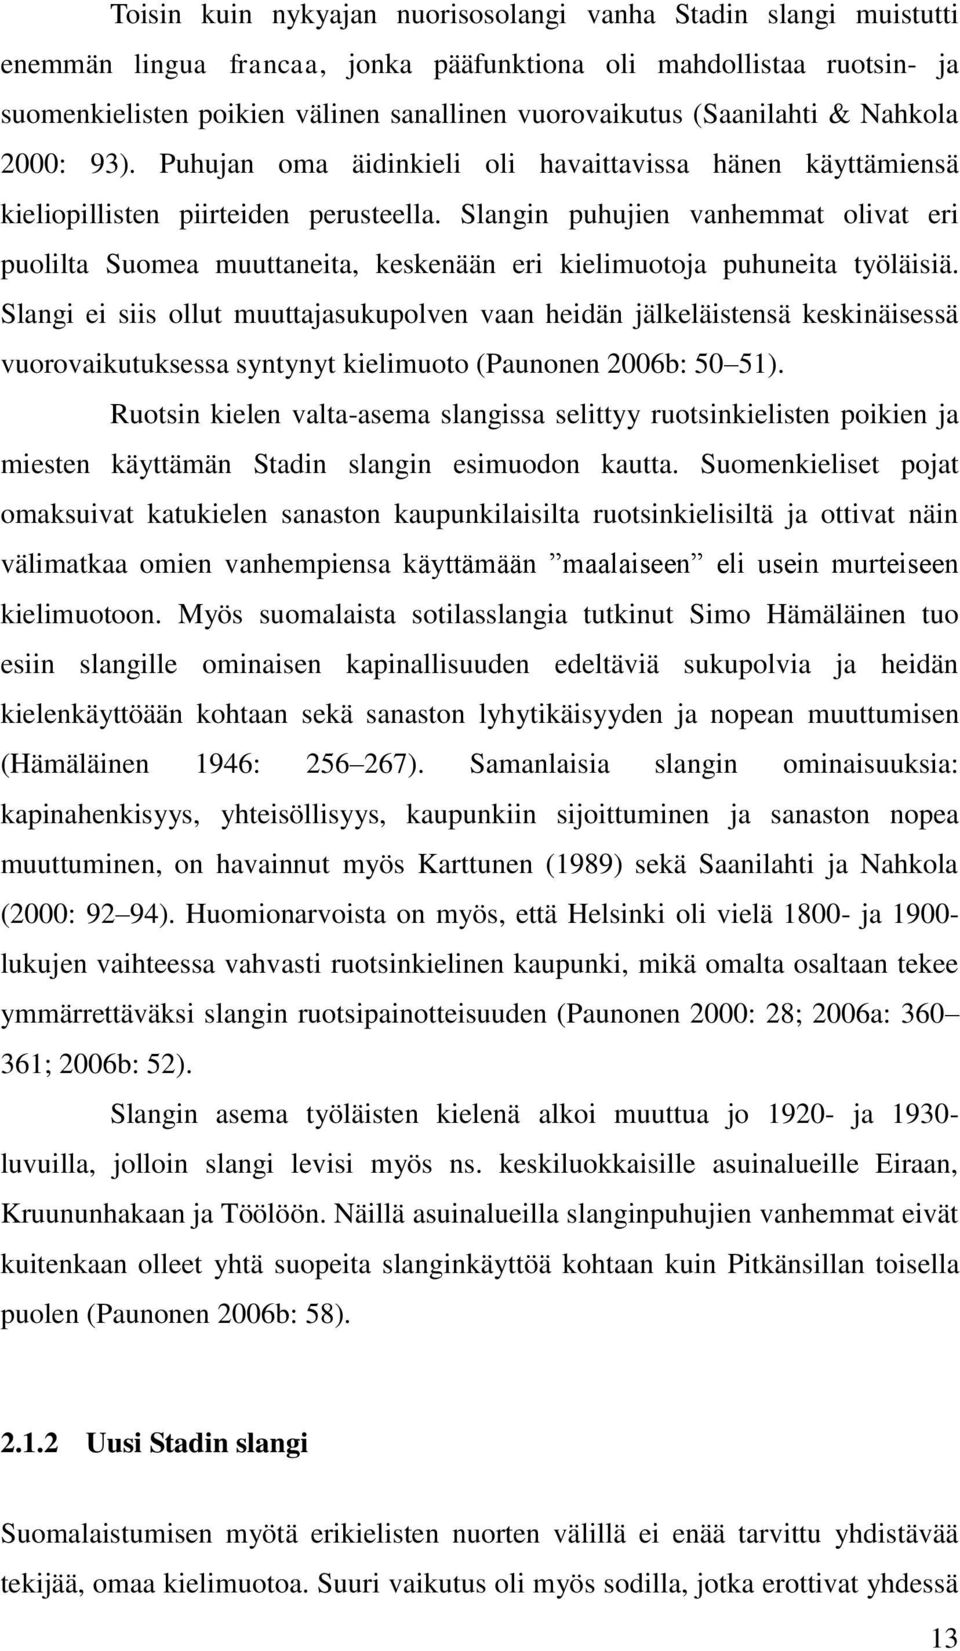 Slangin puhujien vanhemmat olivat eri puolilta Suomea muuttaneita, keskenään eri kielimuotoja puhuneita työläisiä.